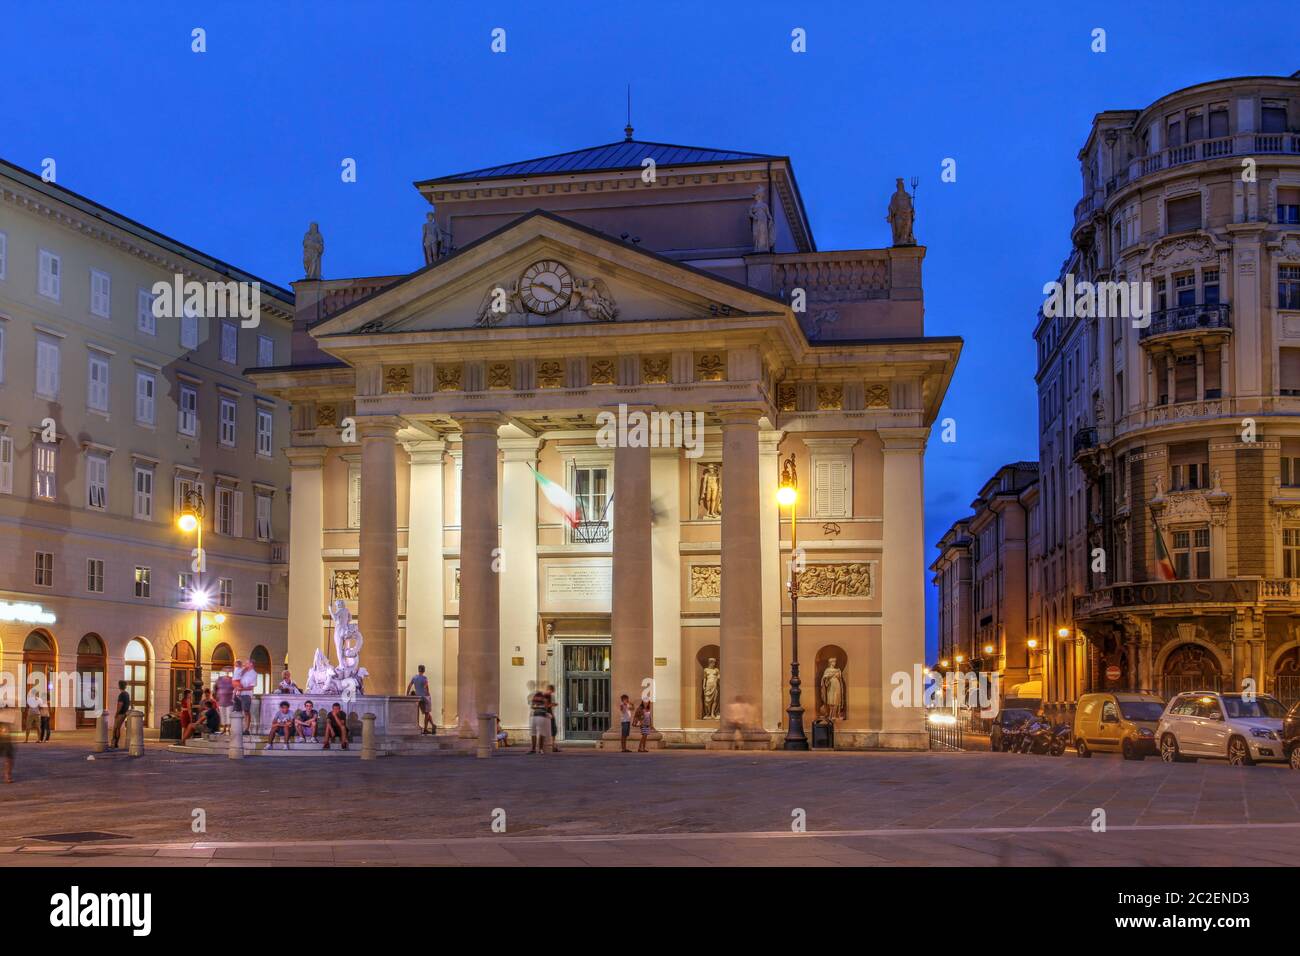 Scena notturna nella piazza della Borsa di Trieste, con particolare attenzione all'antico edificio neoclassico della Borsa. Foto Stock